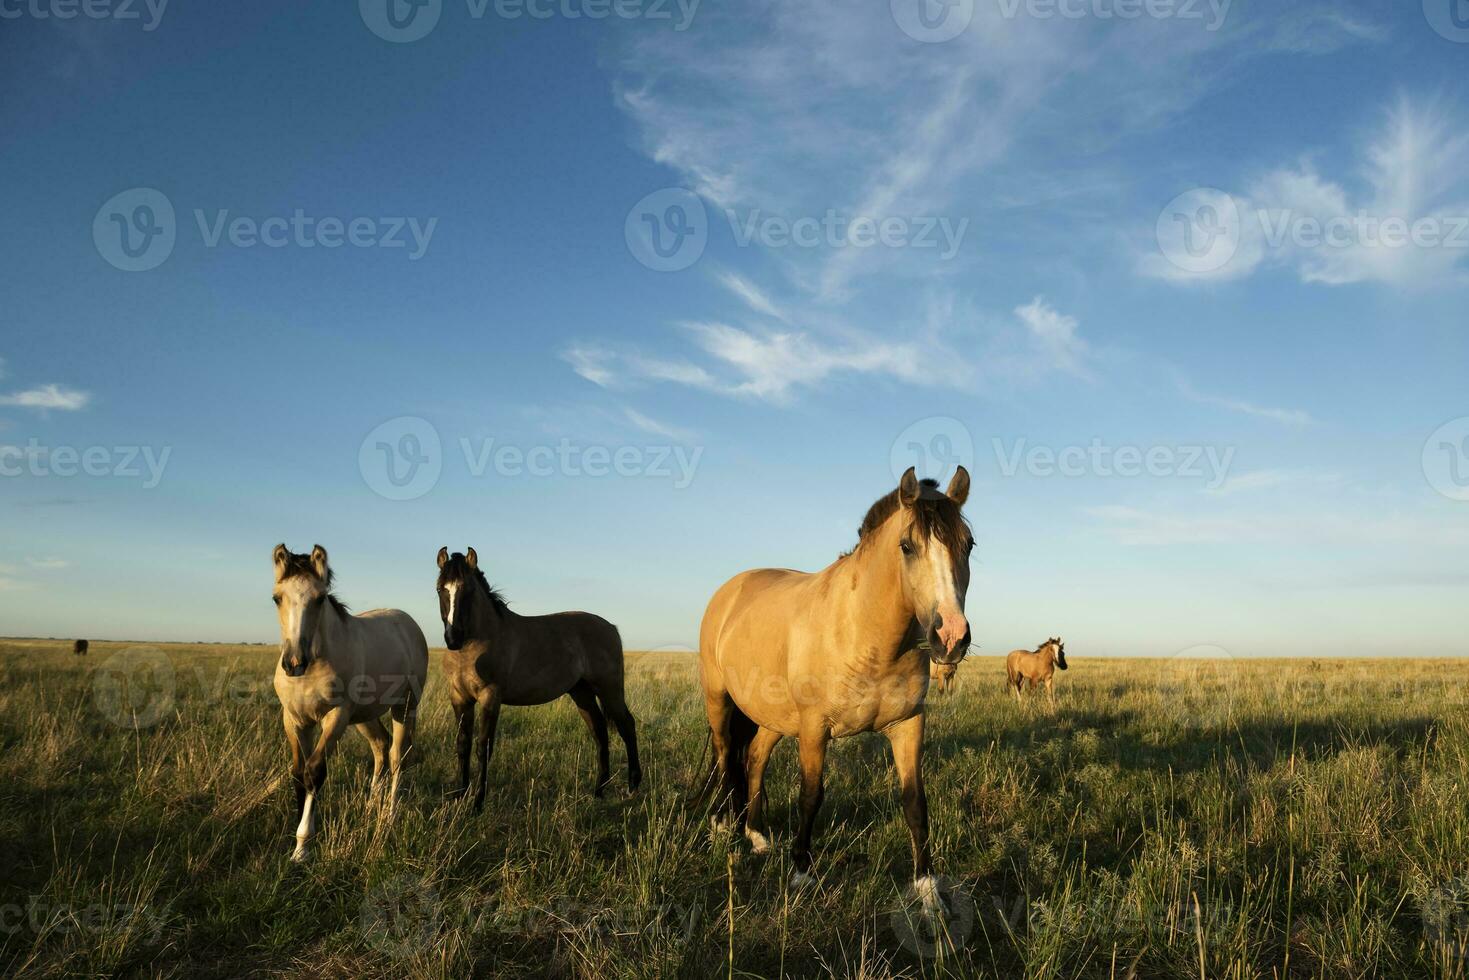 hästar i de argentine landsbygden, la pampa provins, patagonien, argentina. foto